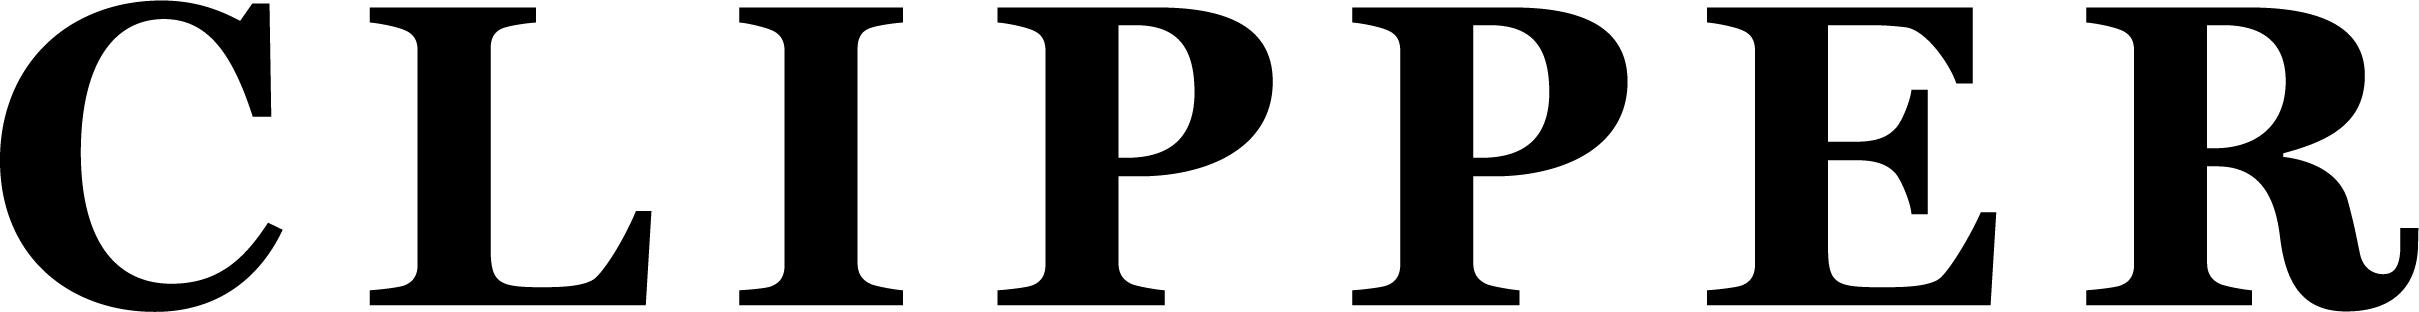 Clipper logo i sort - times new roman der er justeret.